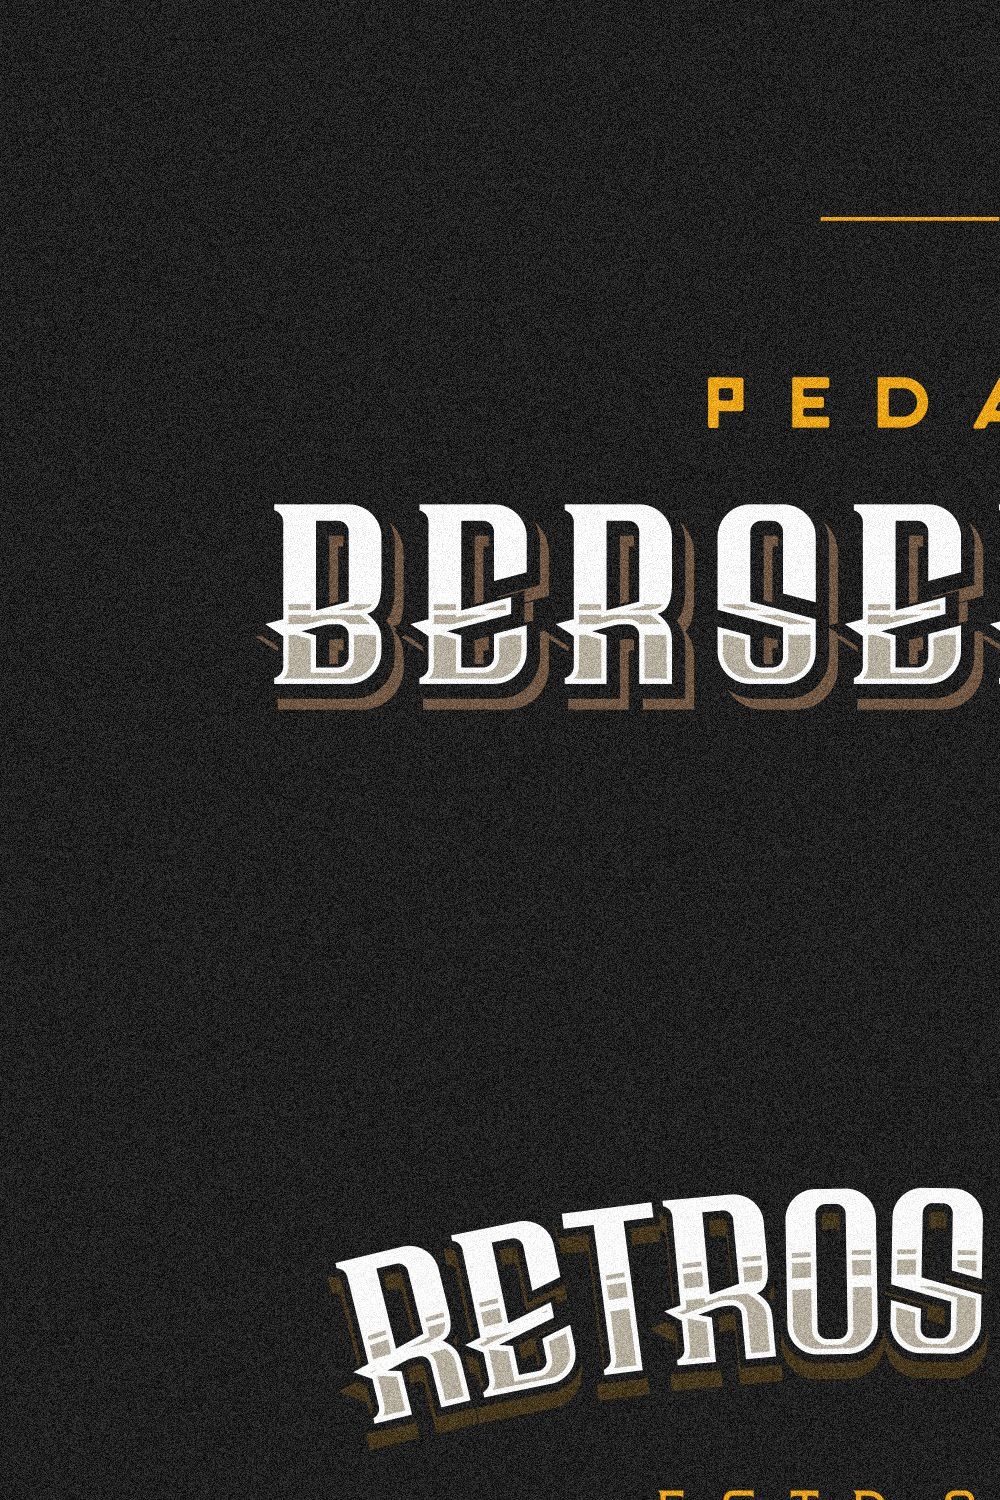 Bersepeda Font Vintage Modern pinterest preview image.